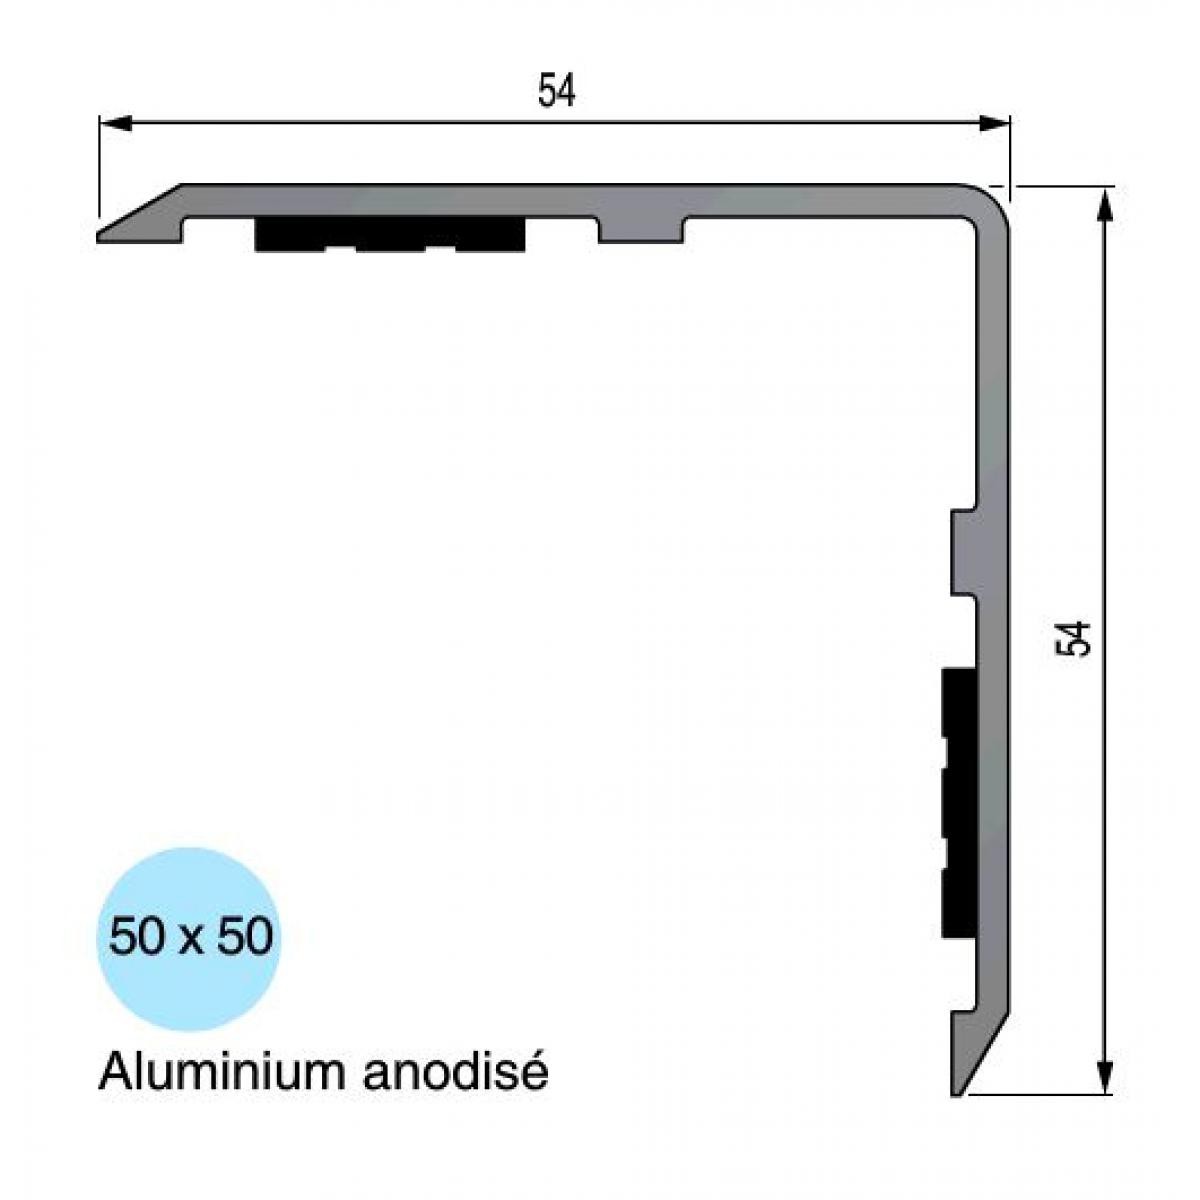 3M - Cornière d'angle sortant adhésif 3M aluminium - 50x50 mm x 1.50 m - 13 50 16 - Verrou, cadenas, targette